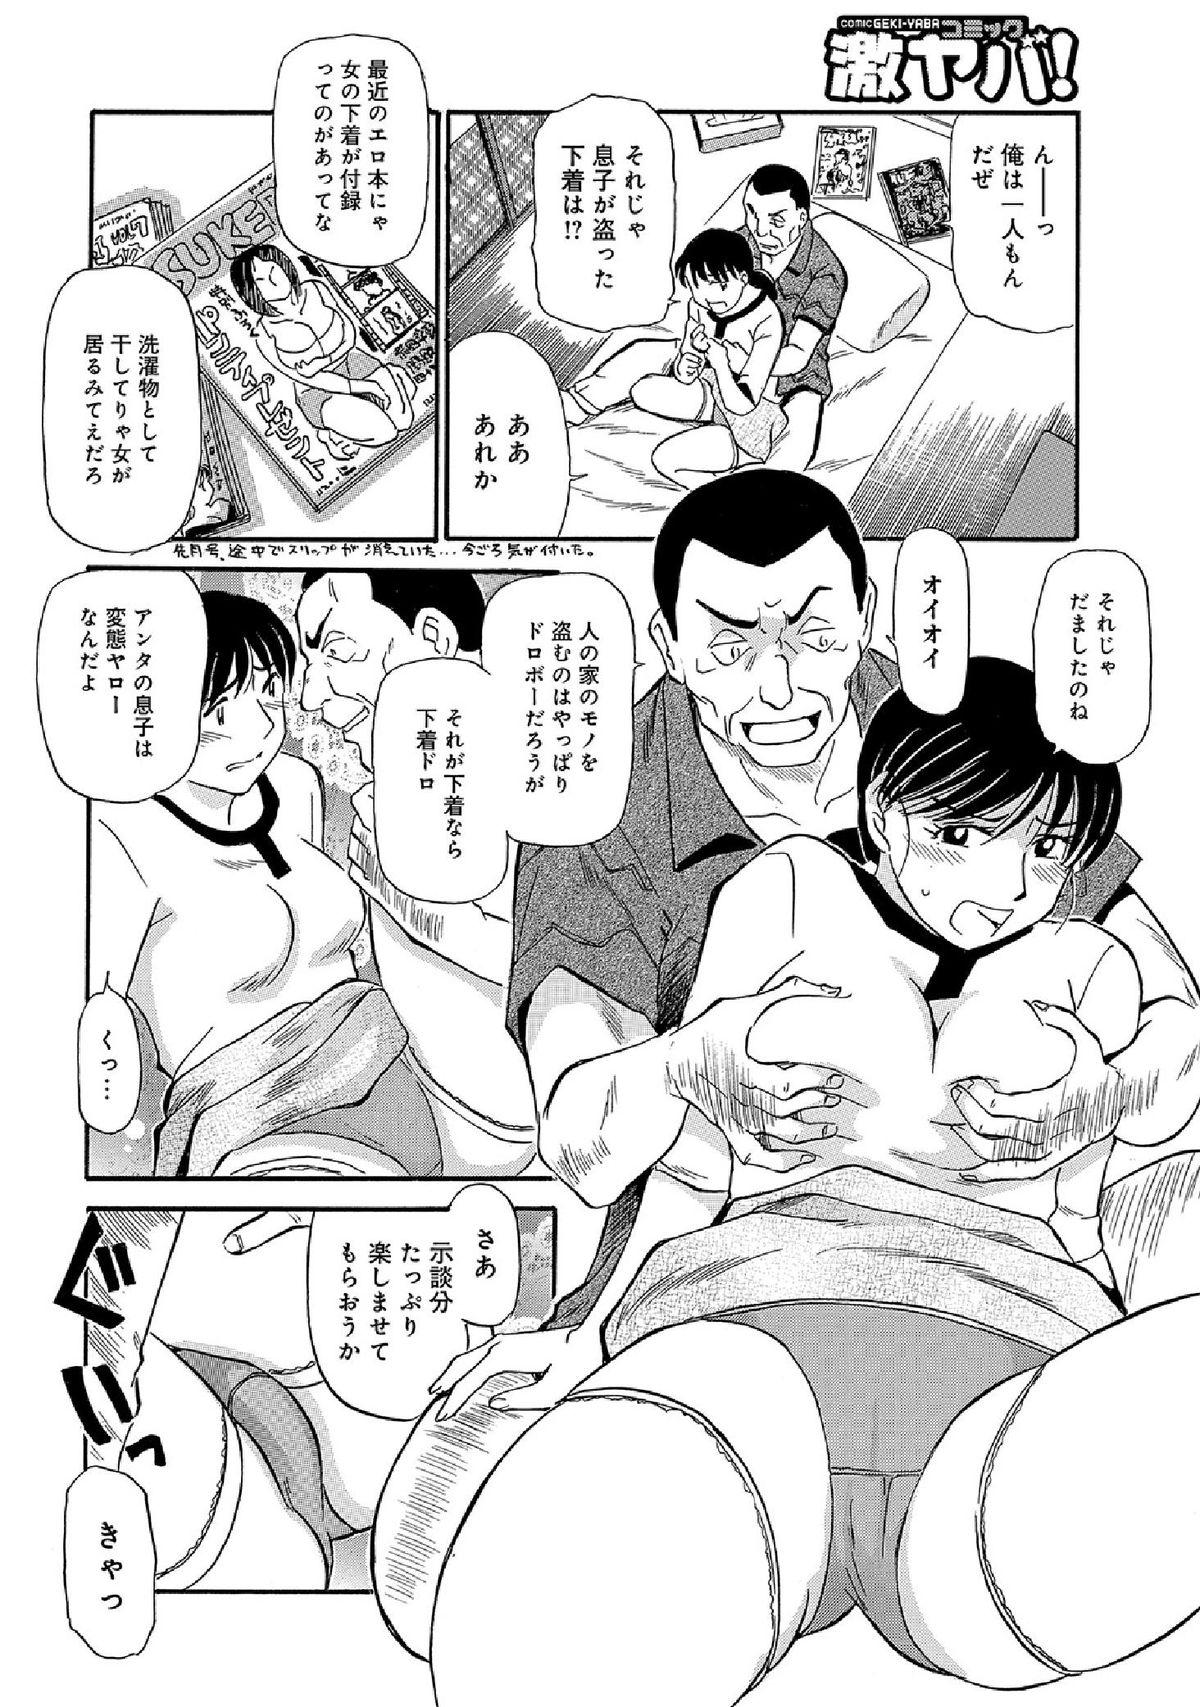 WEB Han Comic Geki Yaba! Vol.52 83